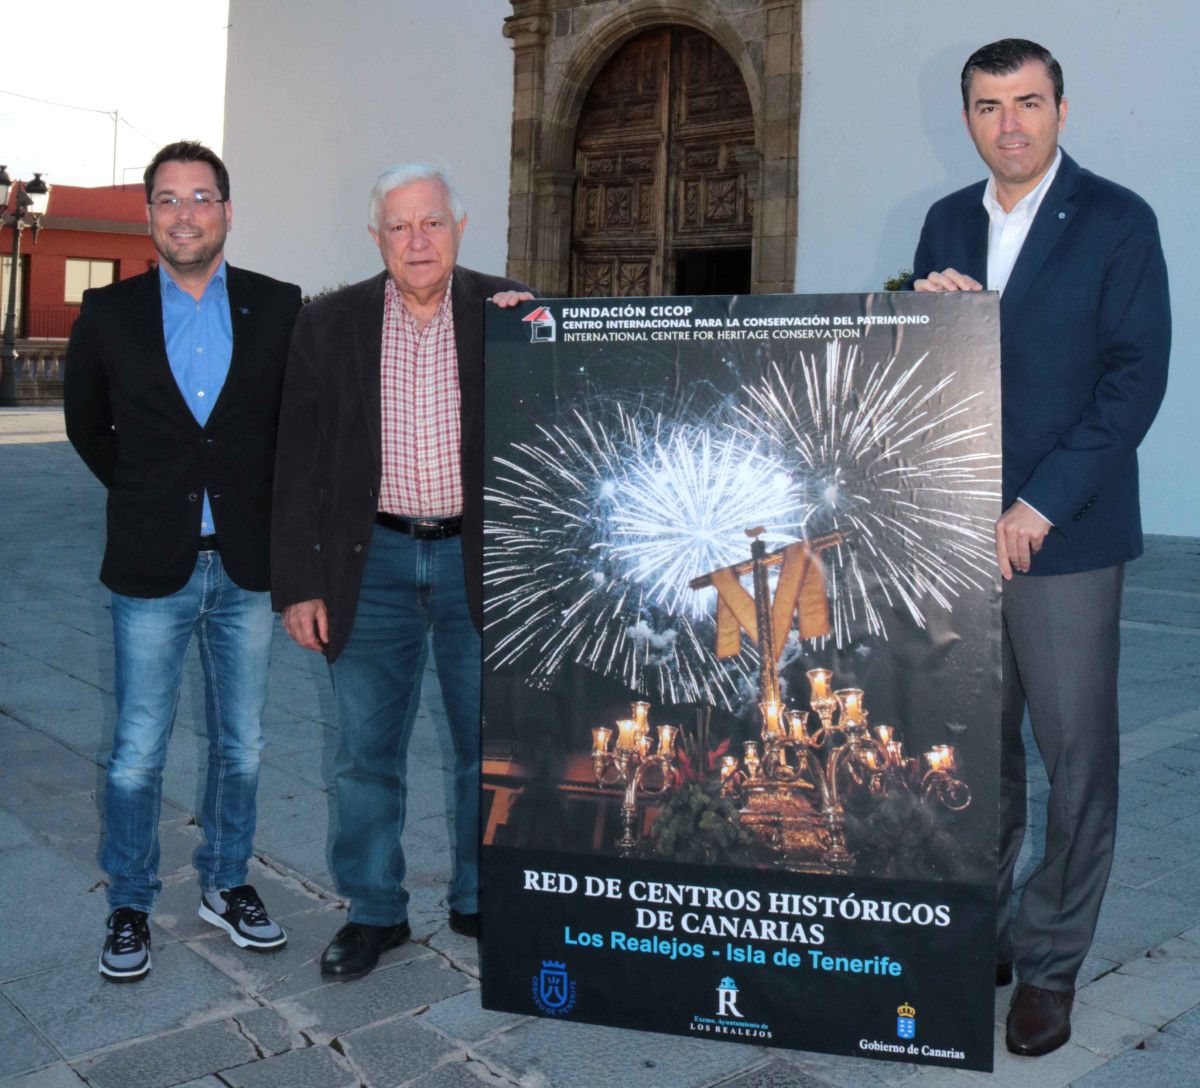 130418 Presentación cartel Los Realejos Centro Histórico de Canarias Cruces y Fuegos de Mayo 21